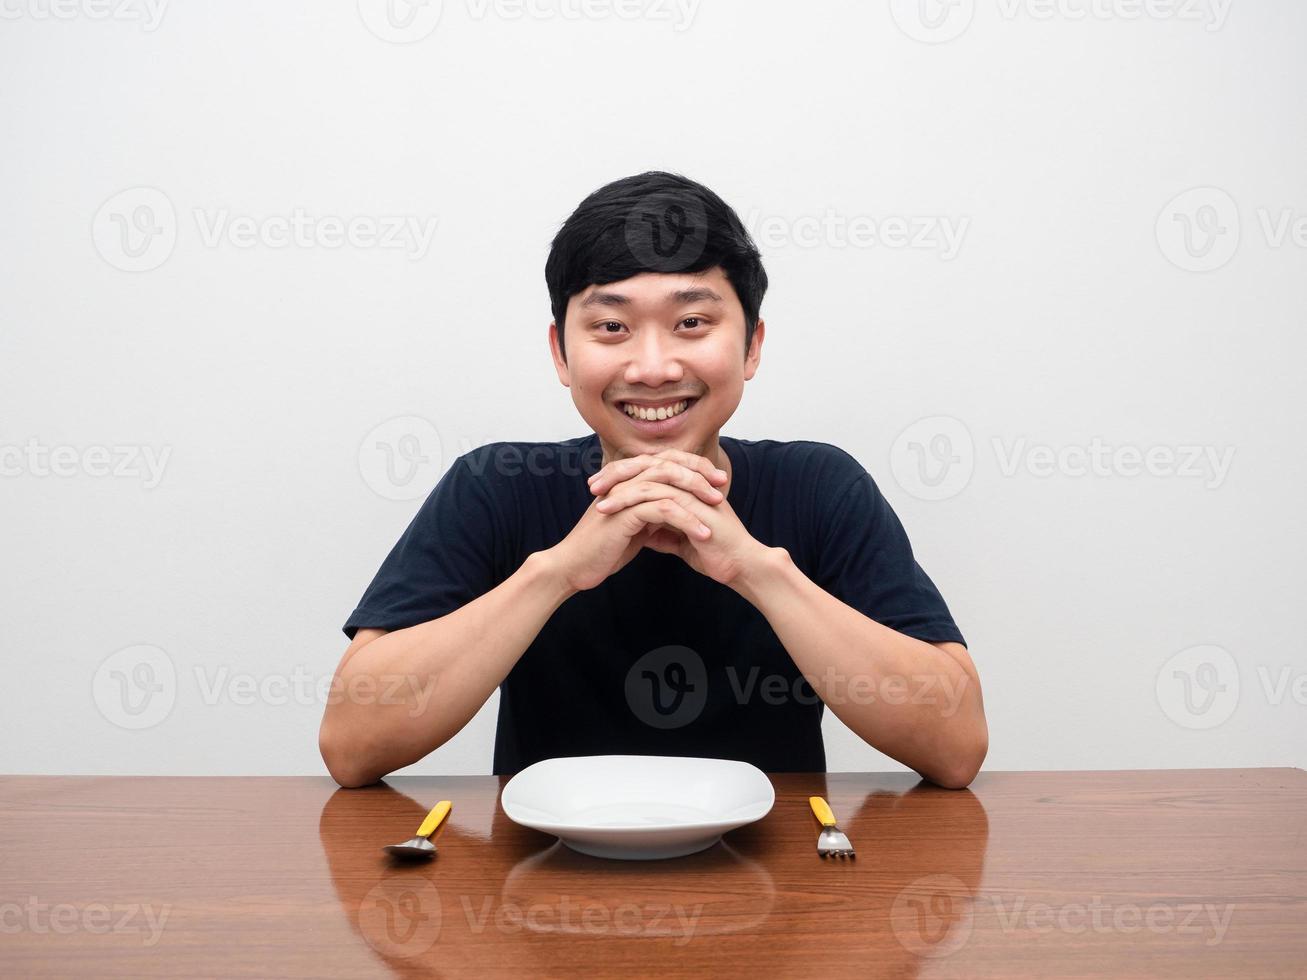 homem positivo sente-se pronto para jantar com o sorriso gentil, talheres de prato vazios na mesa foto